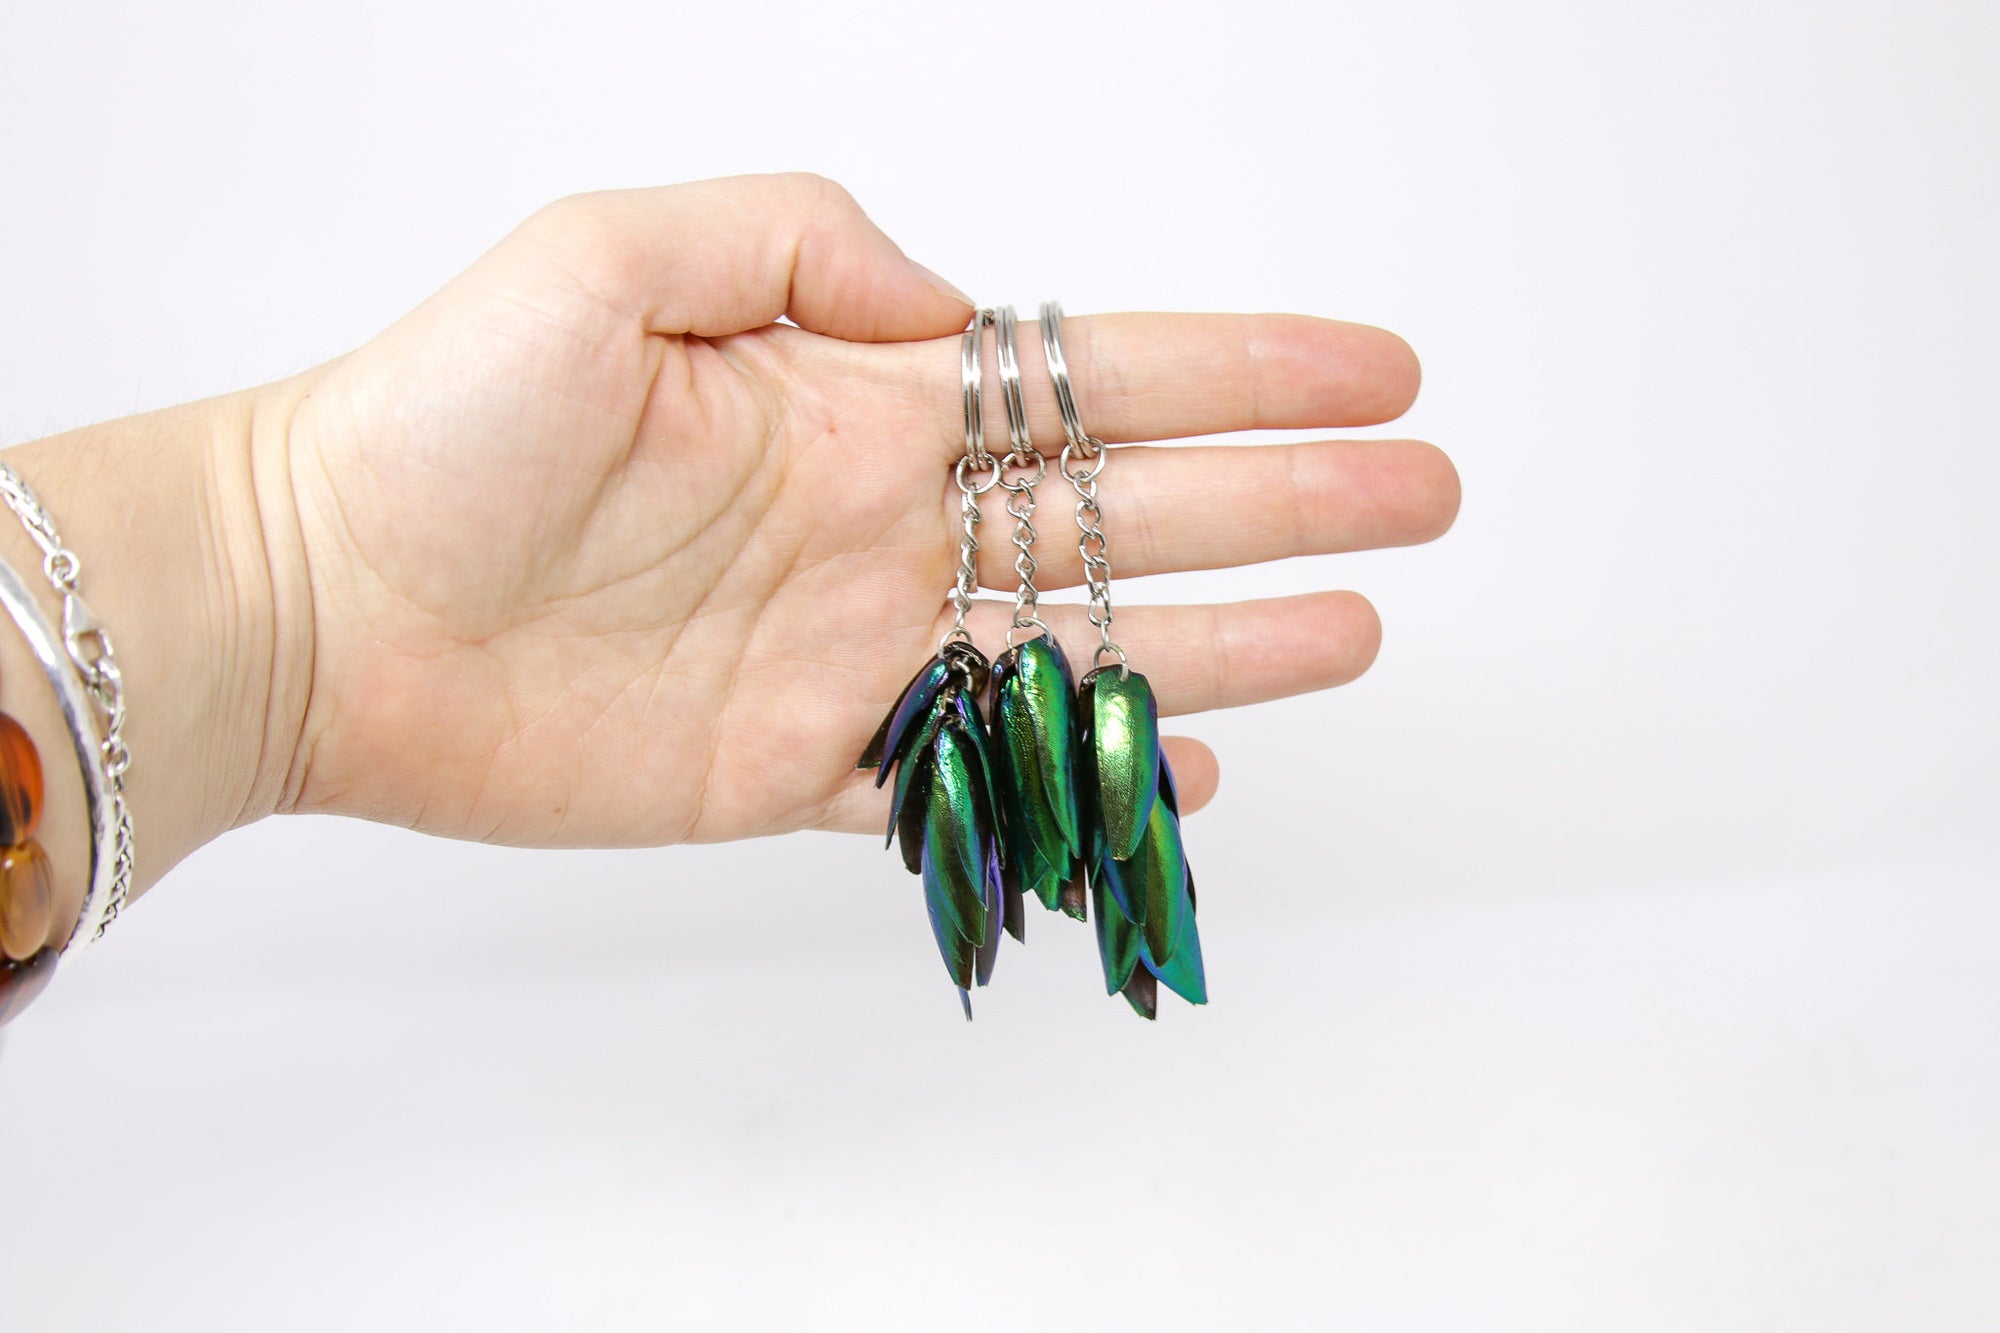 3 Jewel Beetle Keyrings Keychains - Real Metallic Green Beetle Wings Elytra